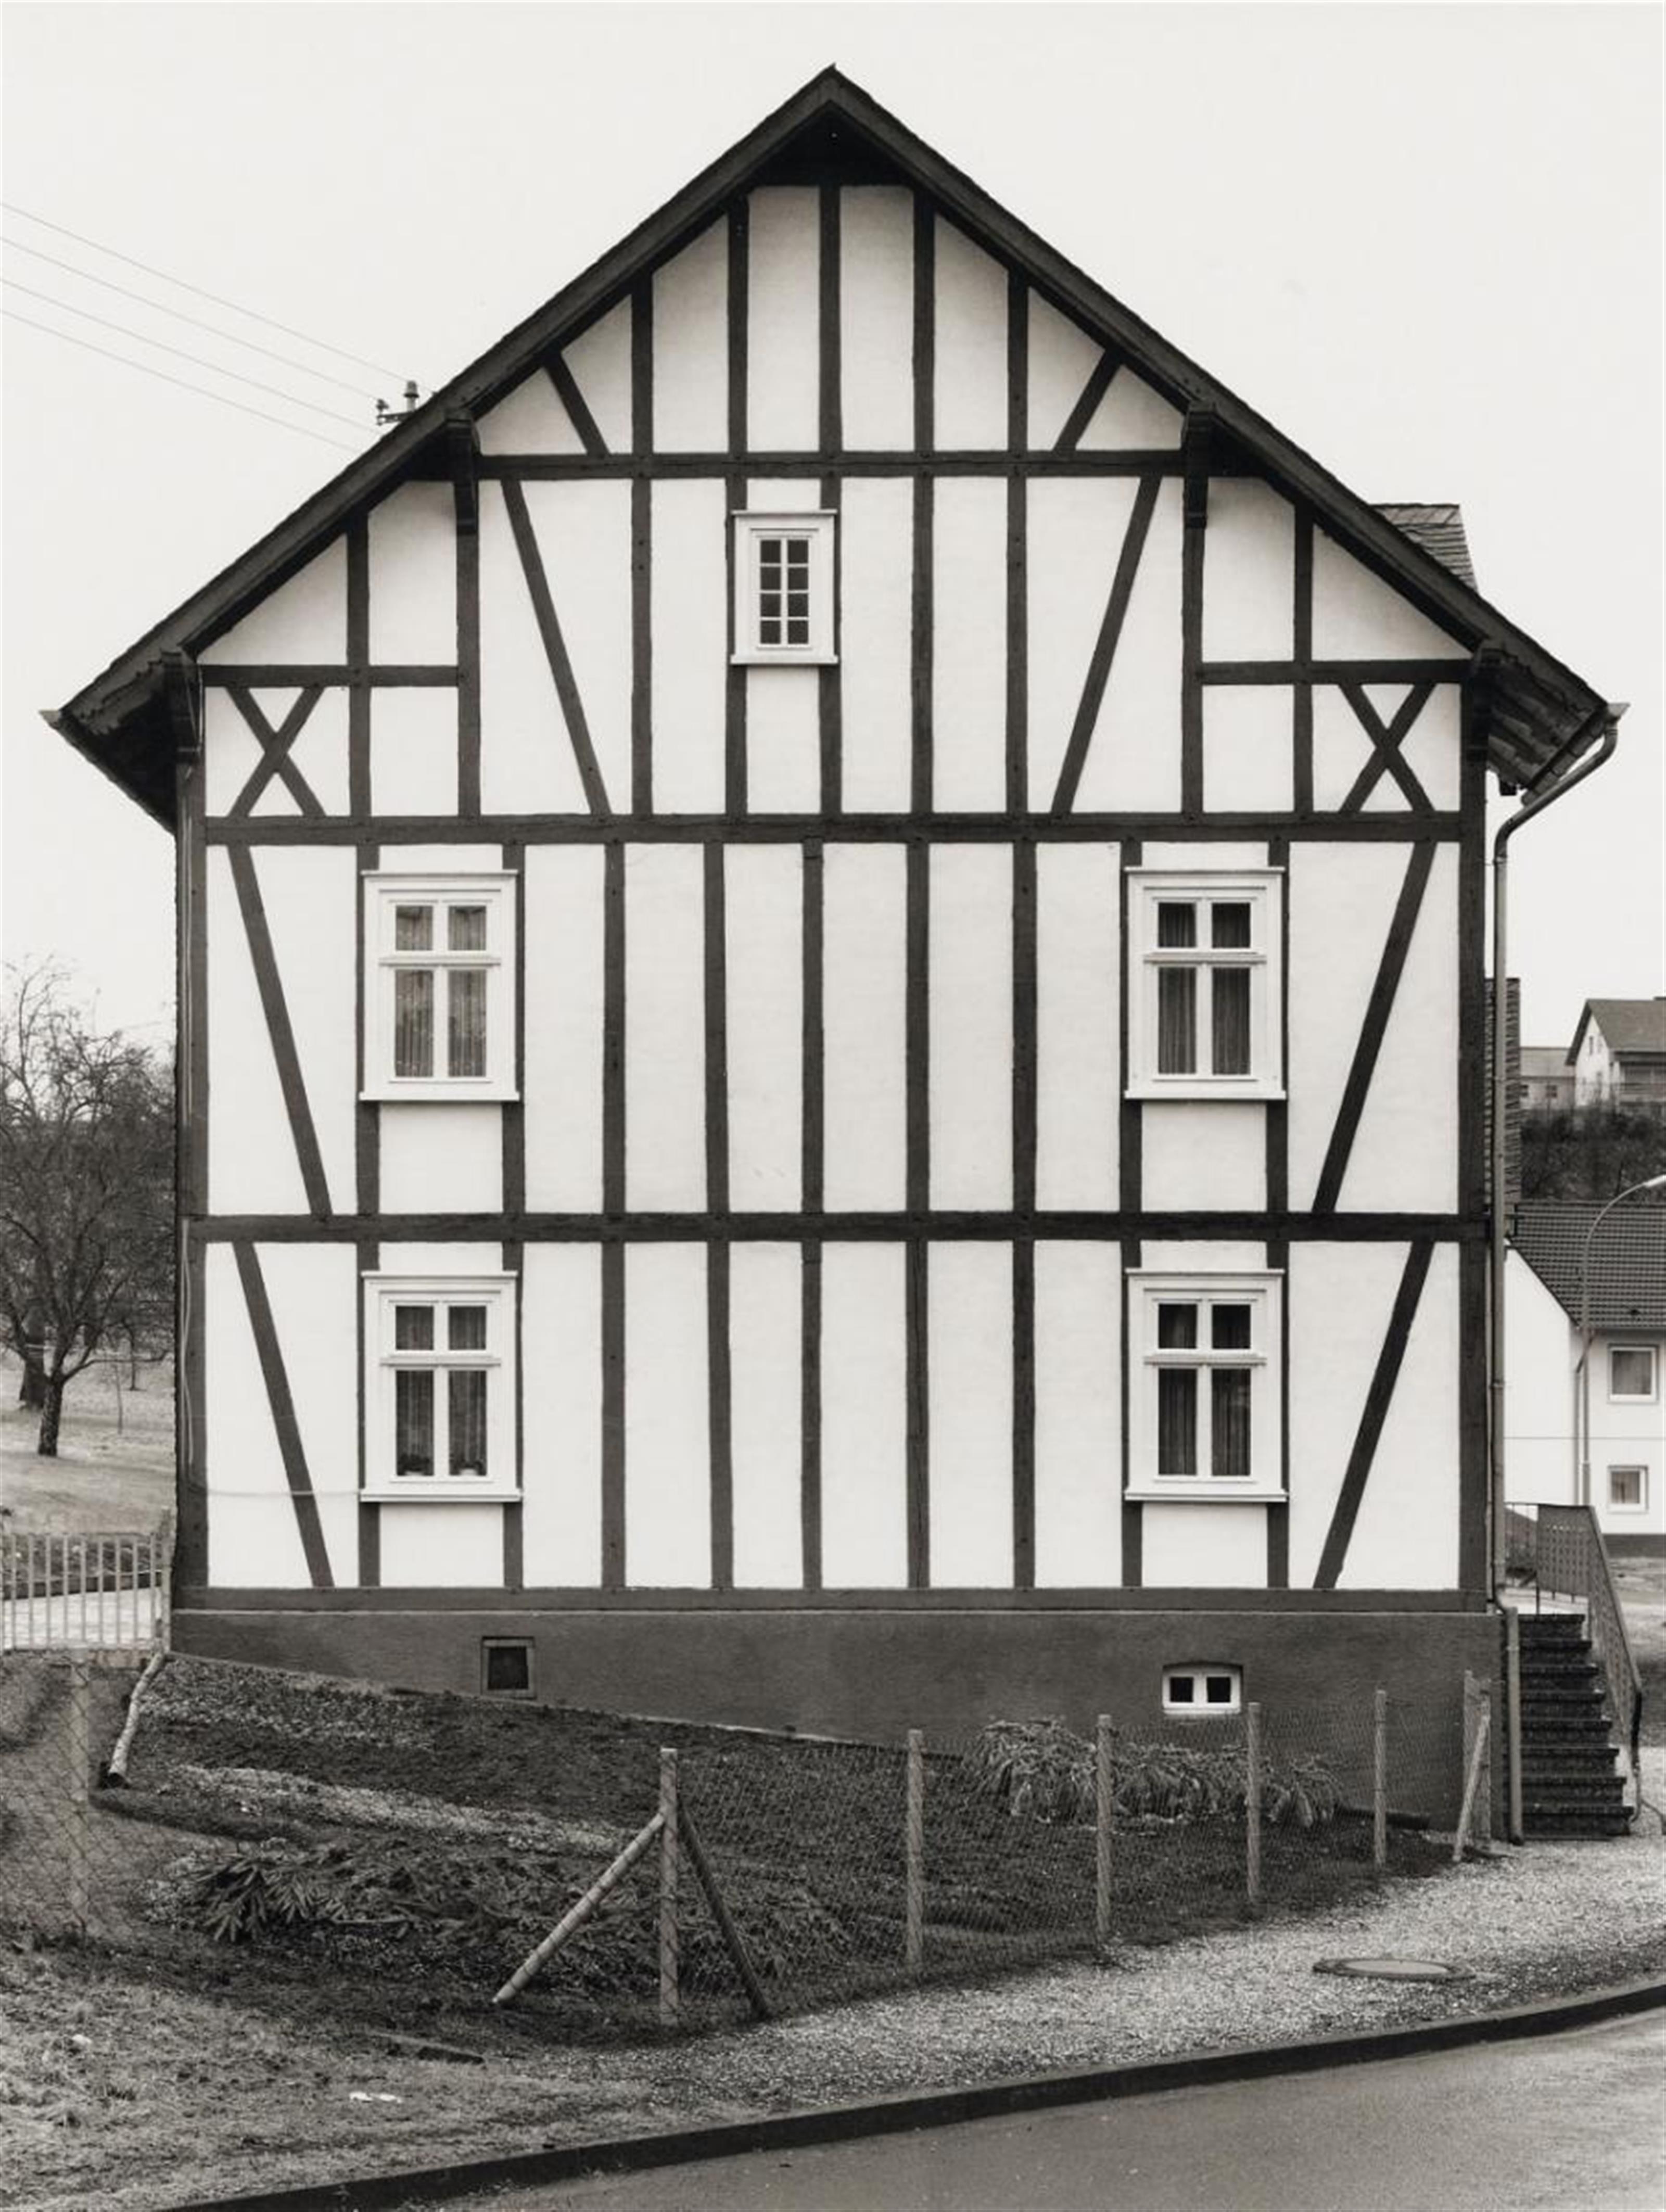 Bernd and Hilla Becher
Hilla Becher
Bernd Becher - Fachwerkhäuser (Half-timbered houses) - image-3